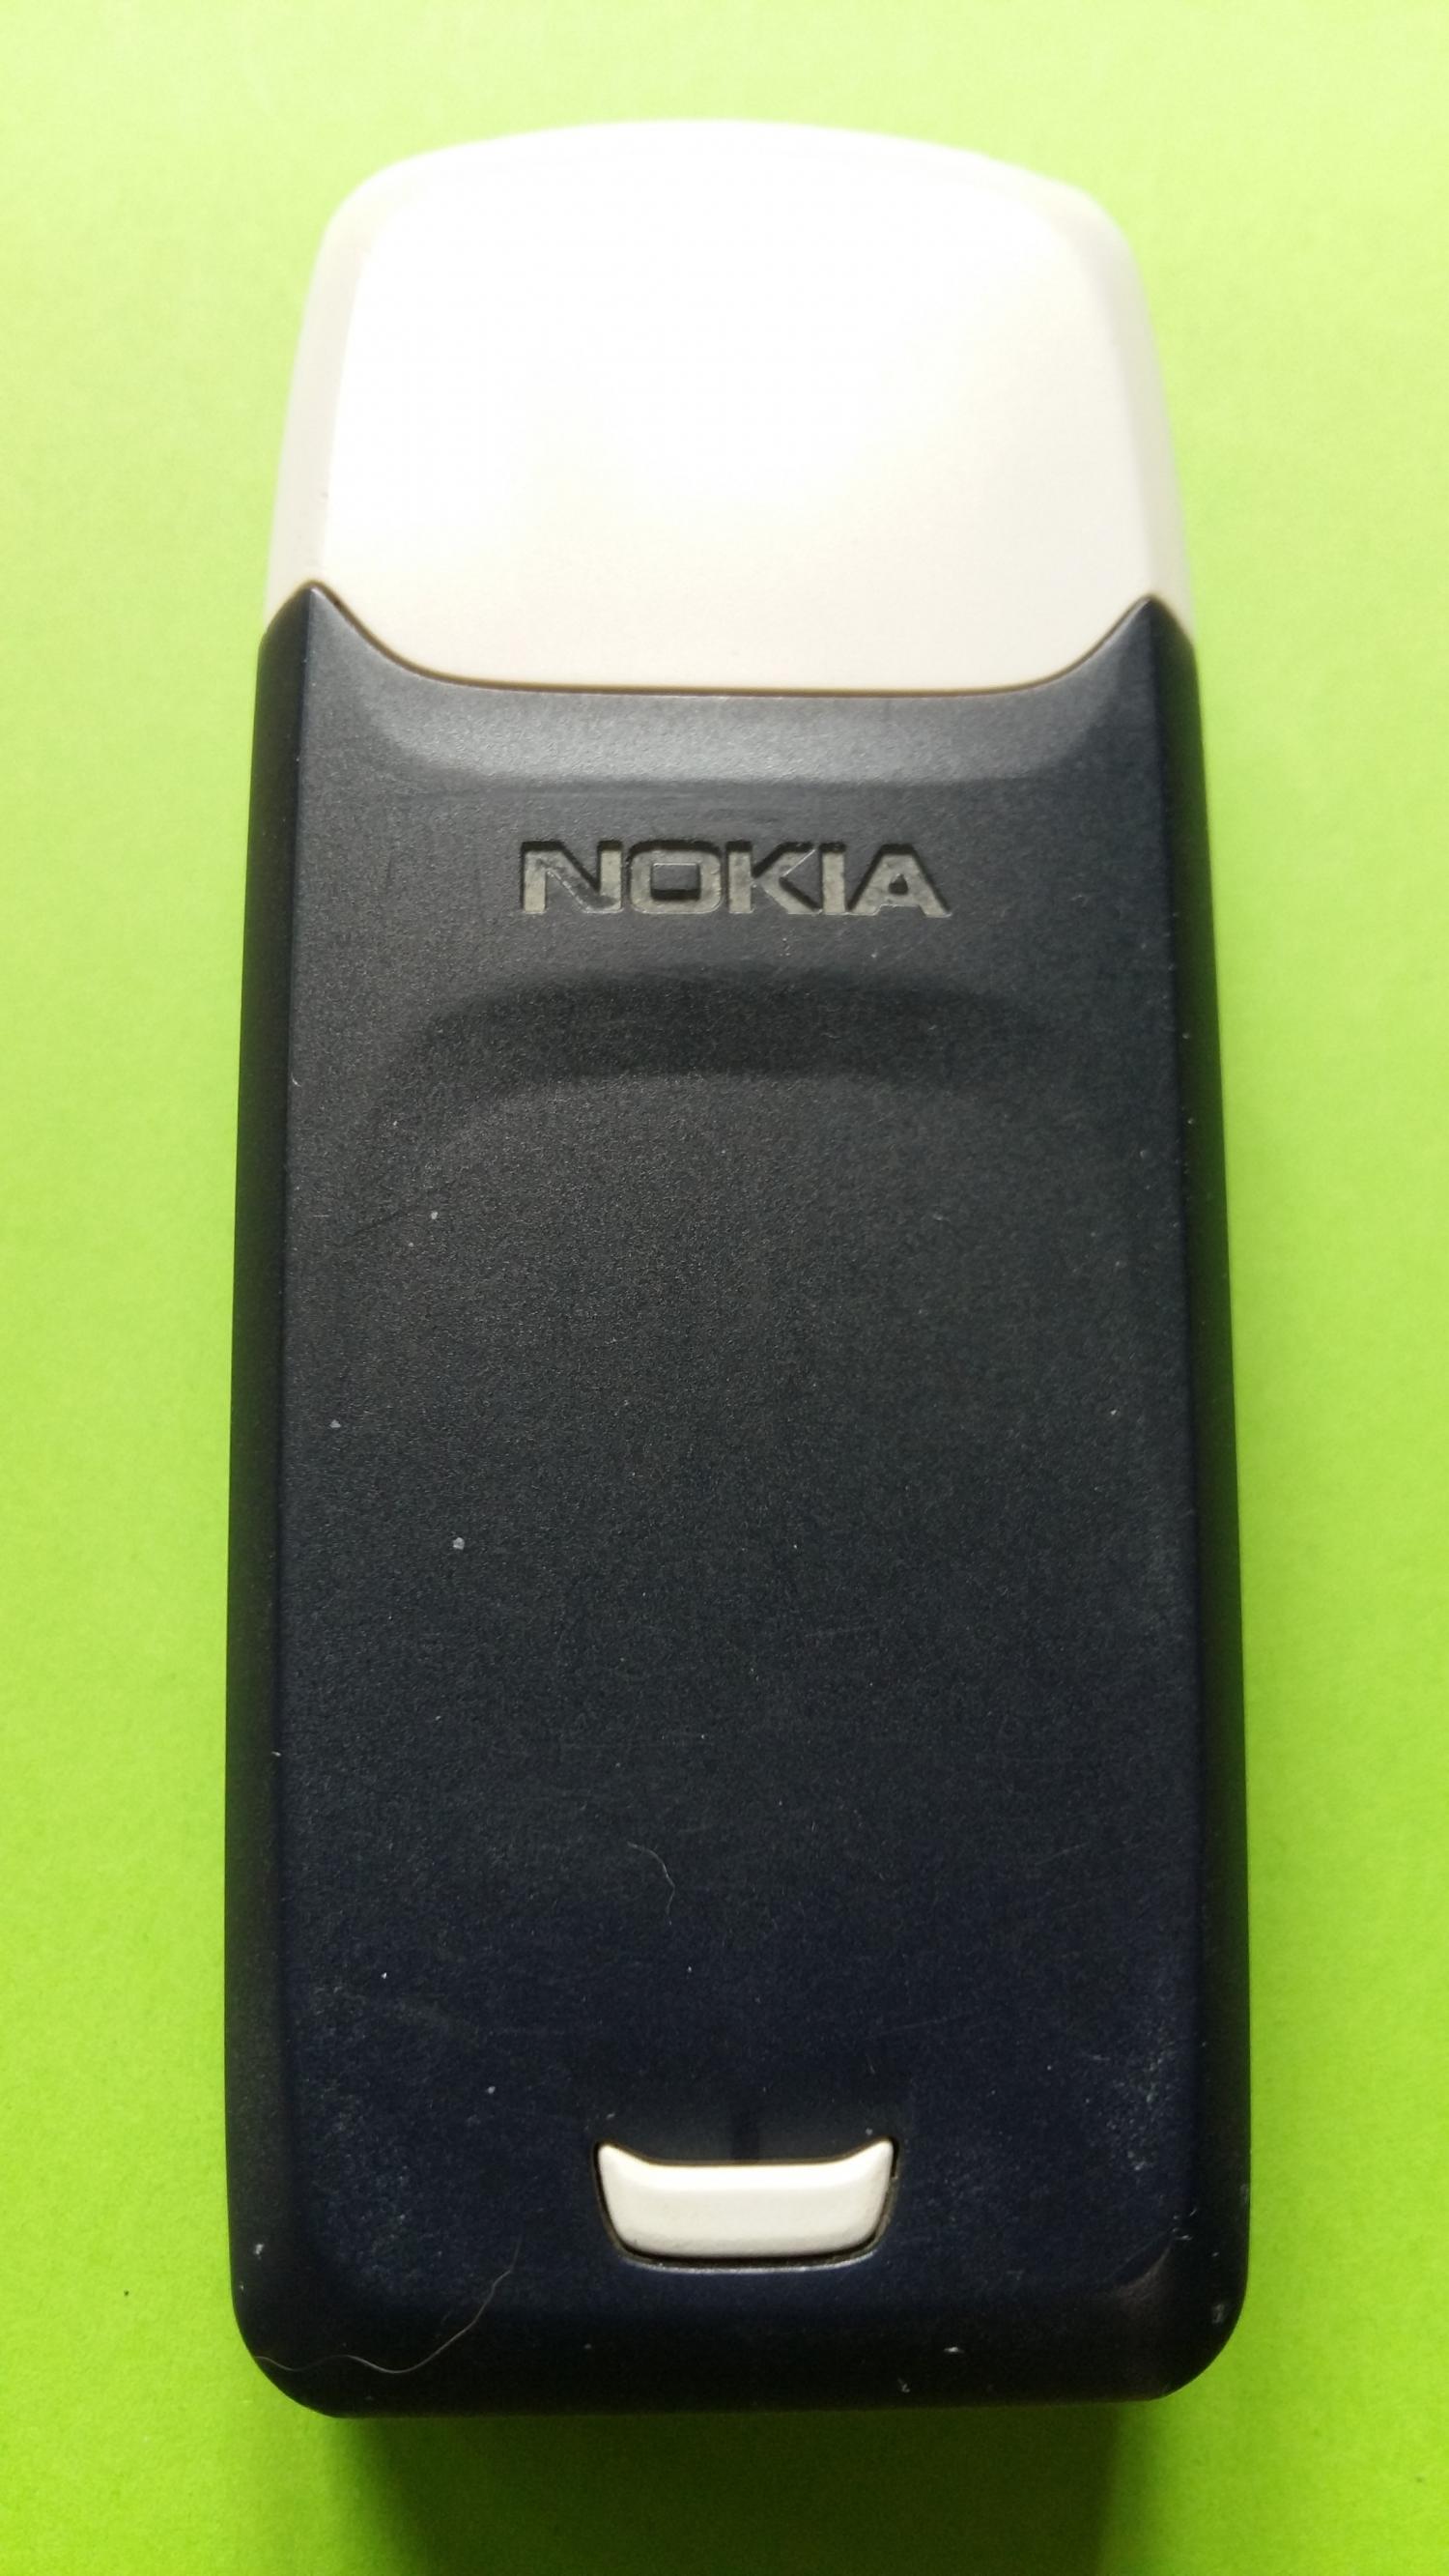 image-7321141-Nokia 3100 (5)2.jpg